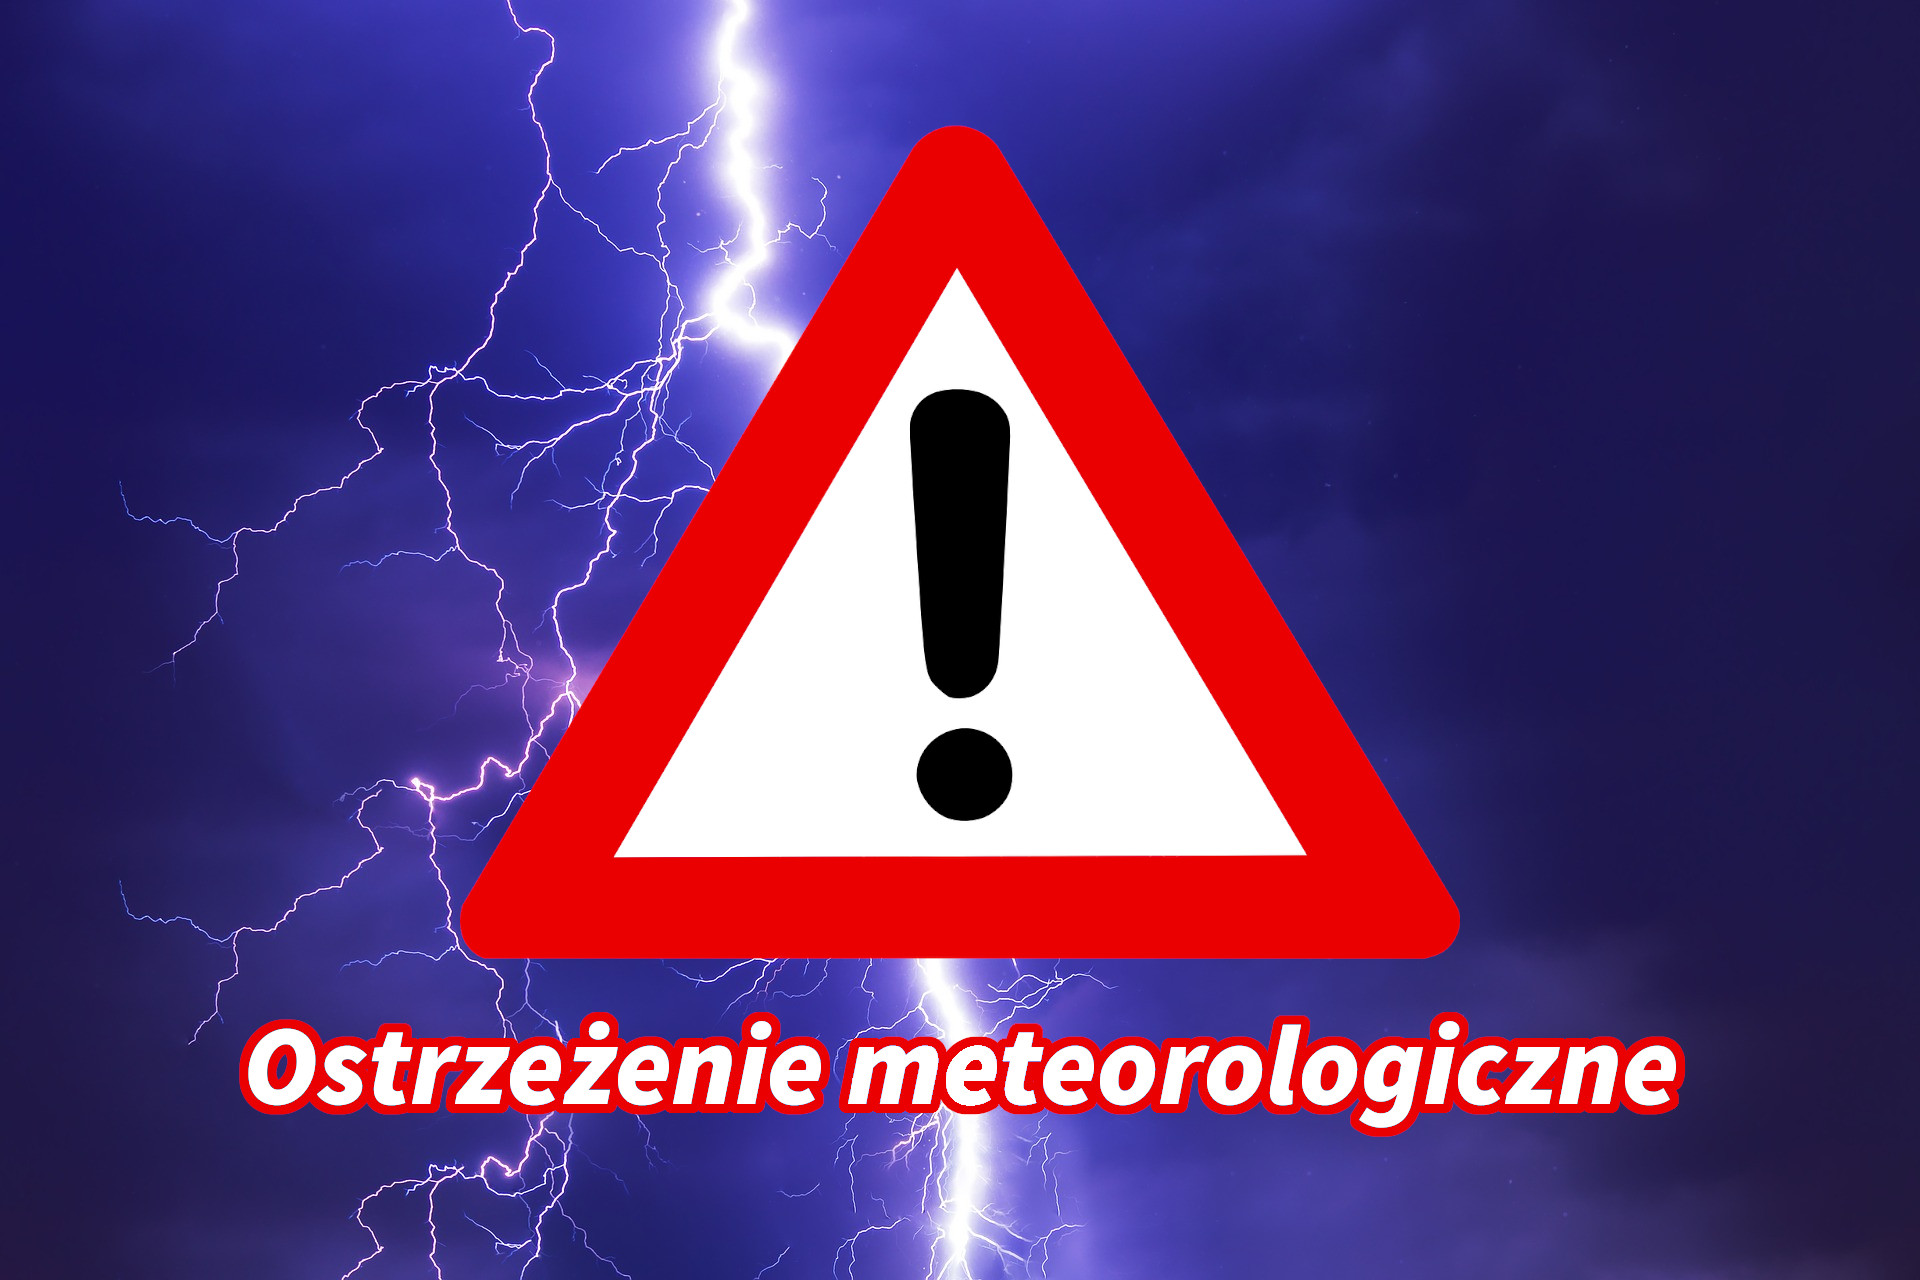 Ostrzeżenia meteorologiczne zbiorczo nr 261 - Burze - odwołane